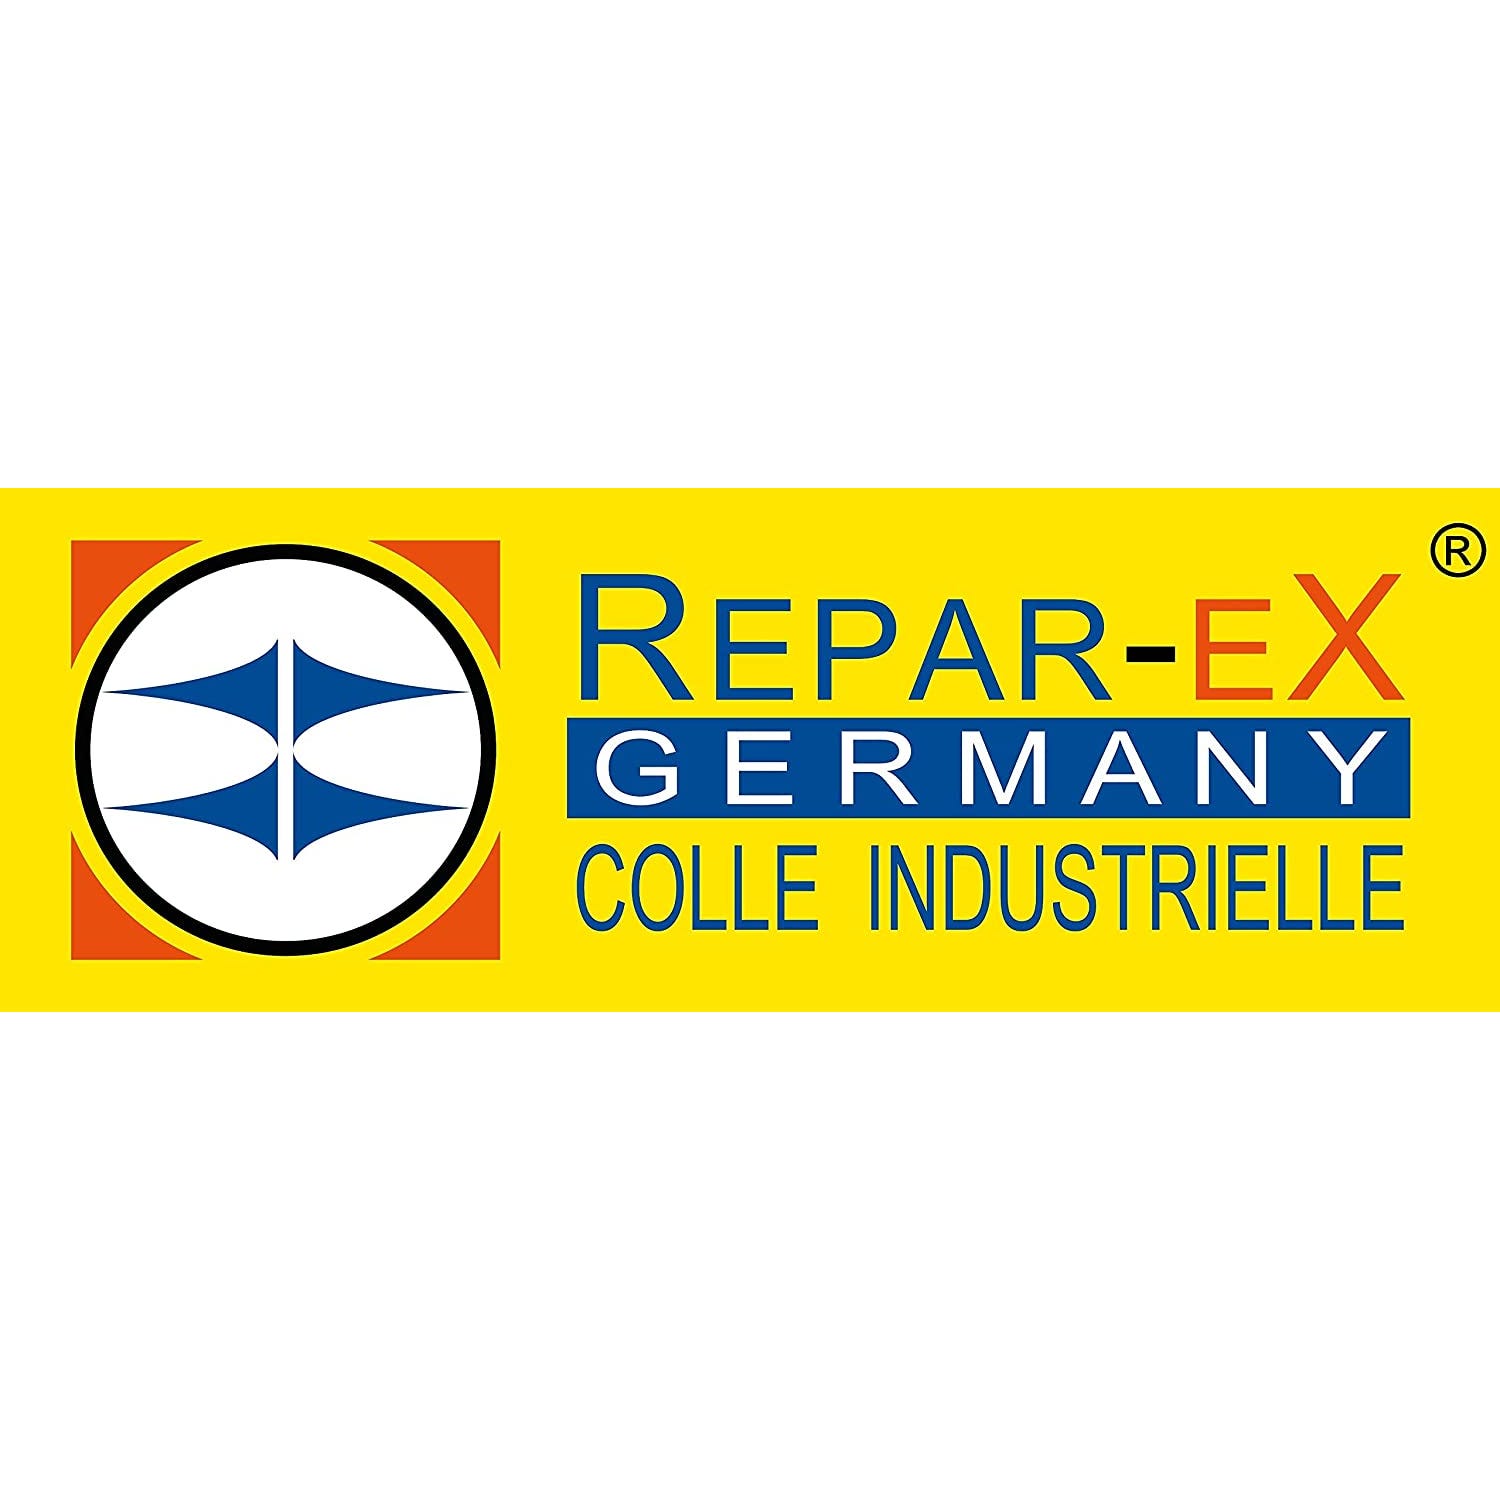 REPAR-EX - Colle Forte Repar-ex 20g - Additif d'Assemblage 30g - Primaire d'Accrochage Reparex 10ml - Tous Supports 4